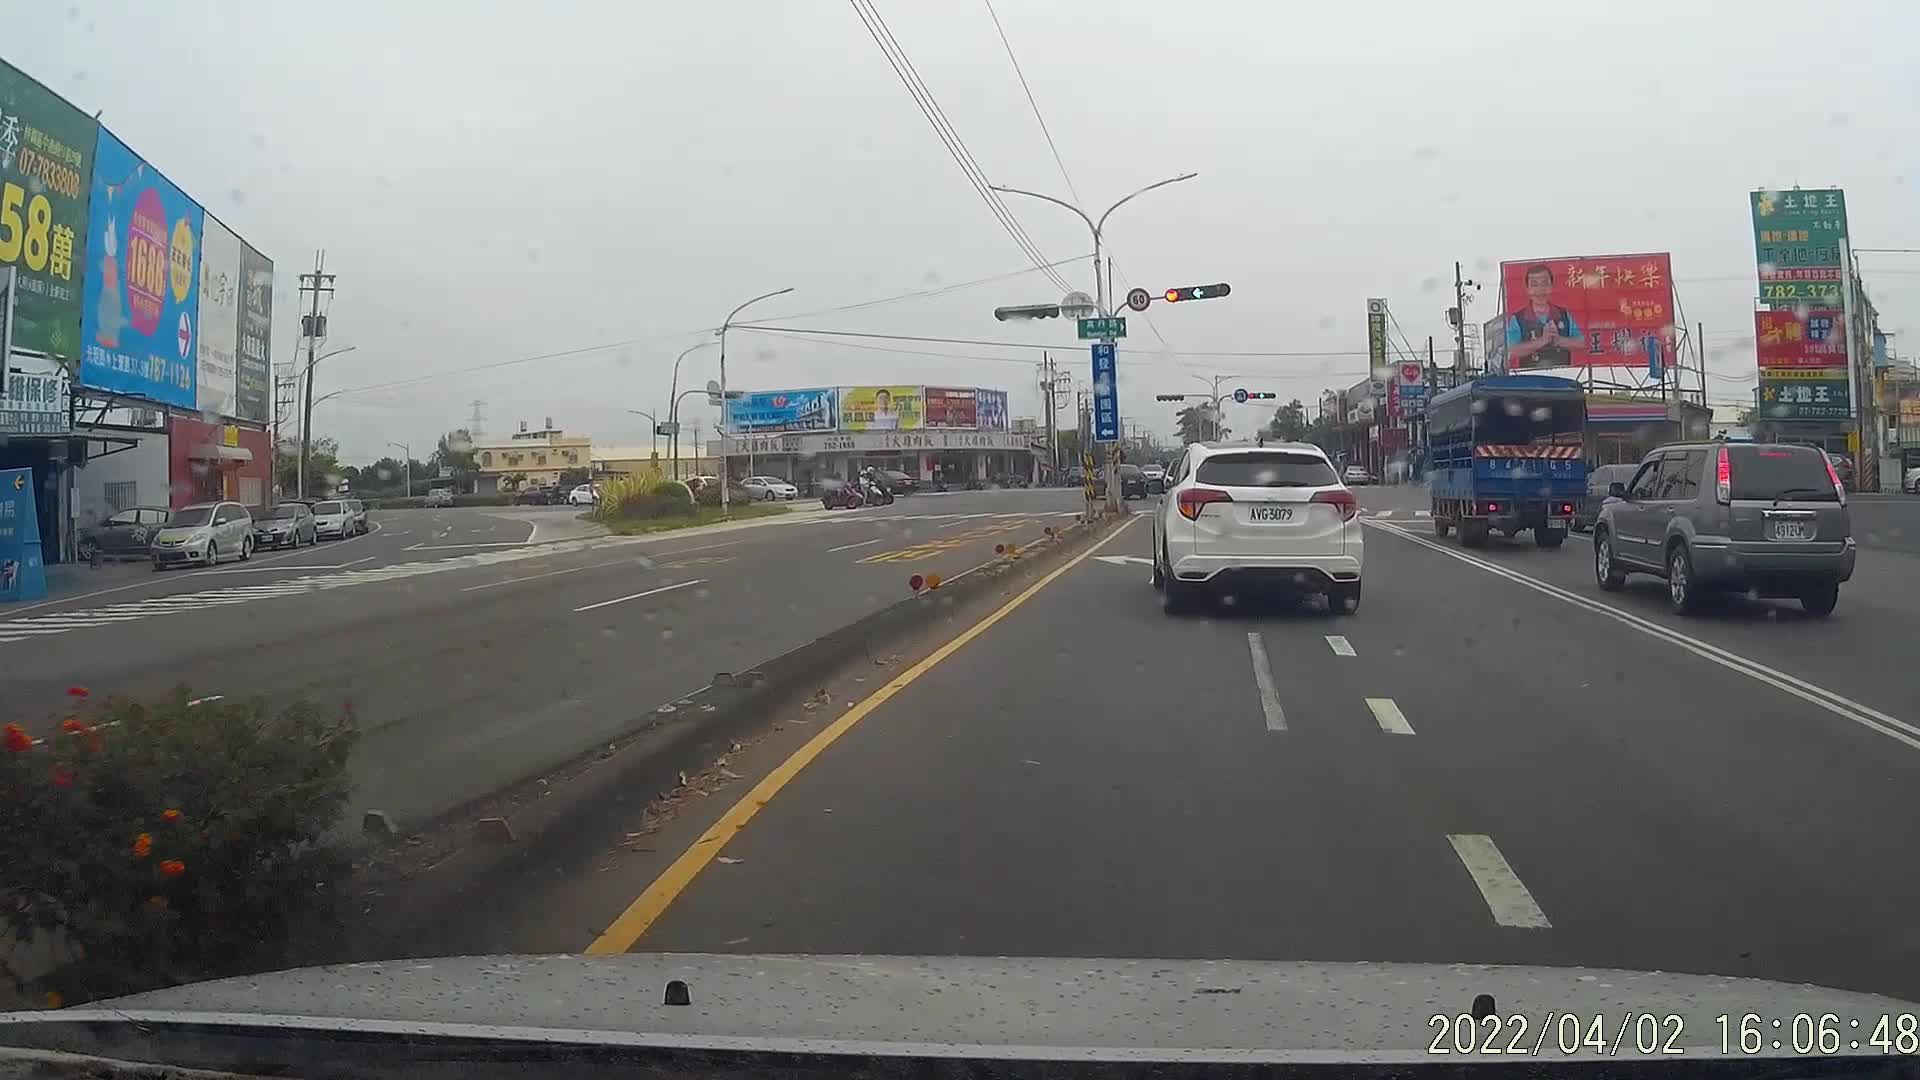 [分享] 左轉燈亮起 避免後車搶快的駕駛方式